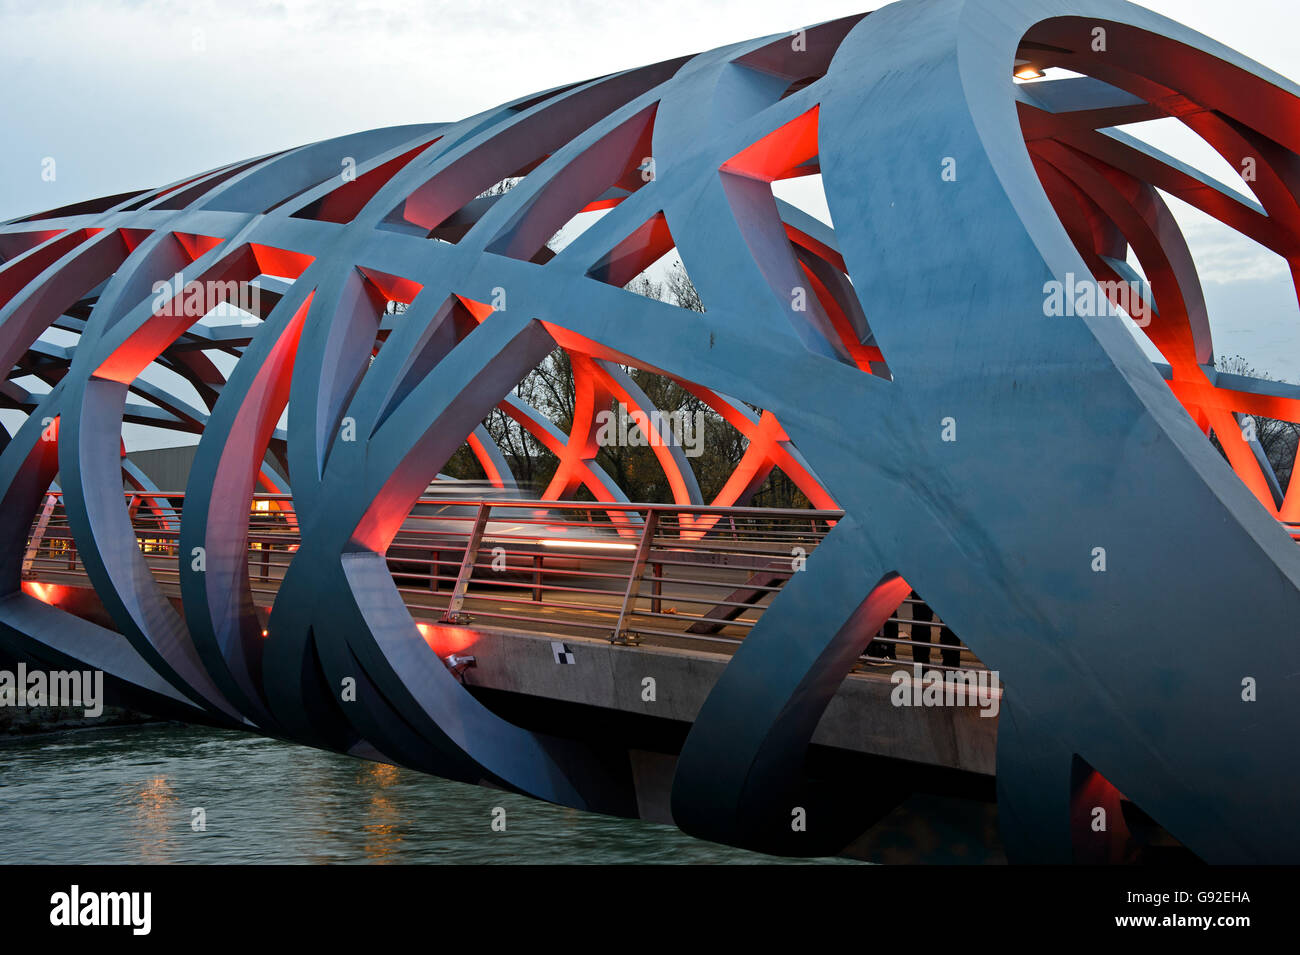 Les effets de lumière en forme de tube à la structure spatiale de l'Hans-Wilsdorf-bridge, Genève, Suisse Banque D'Images